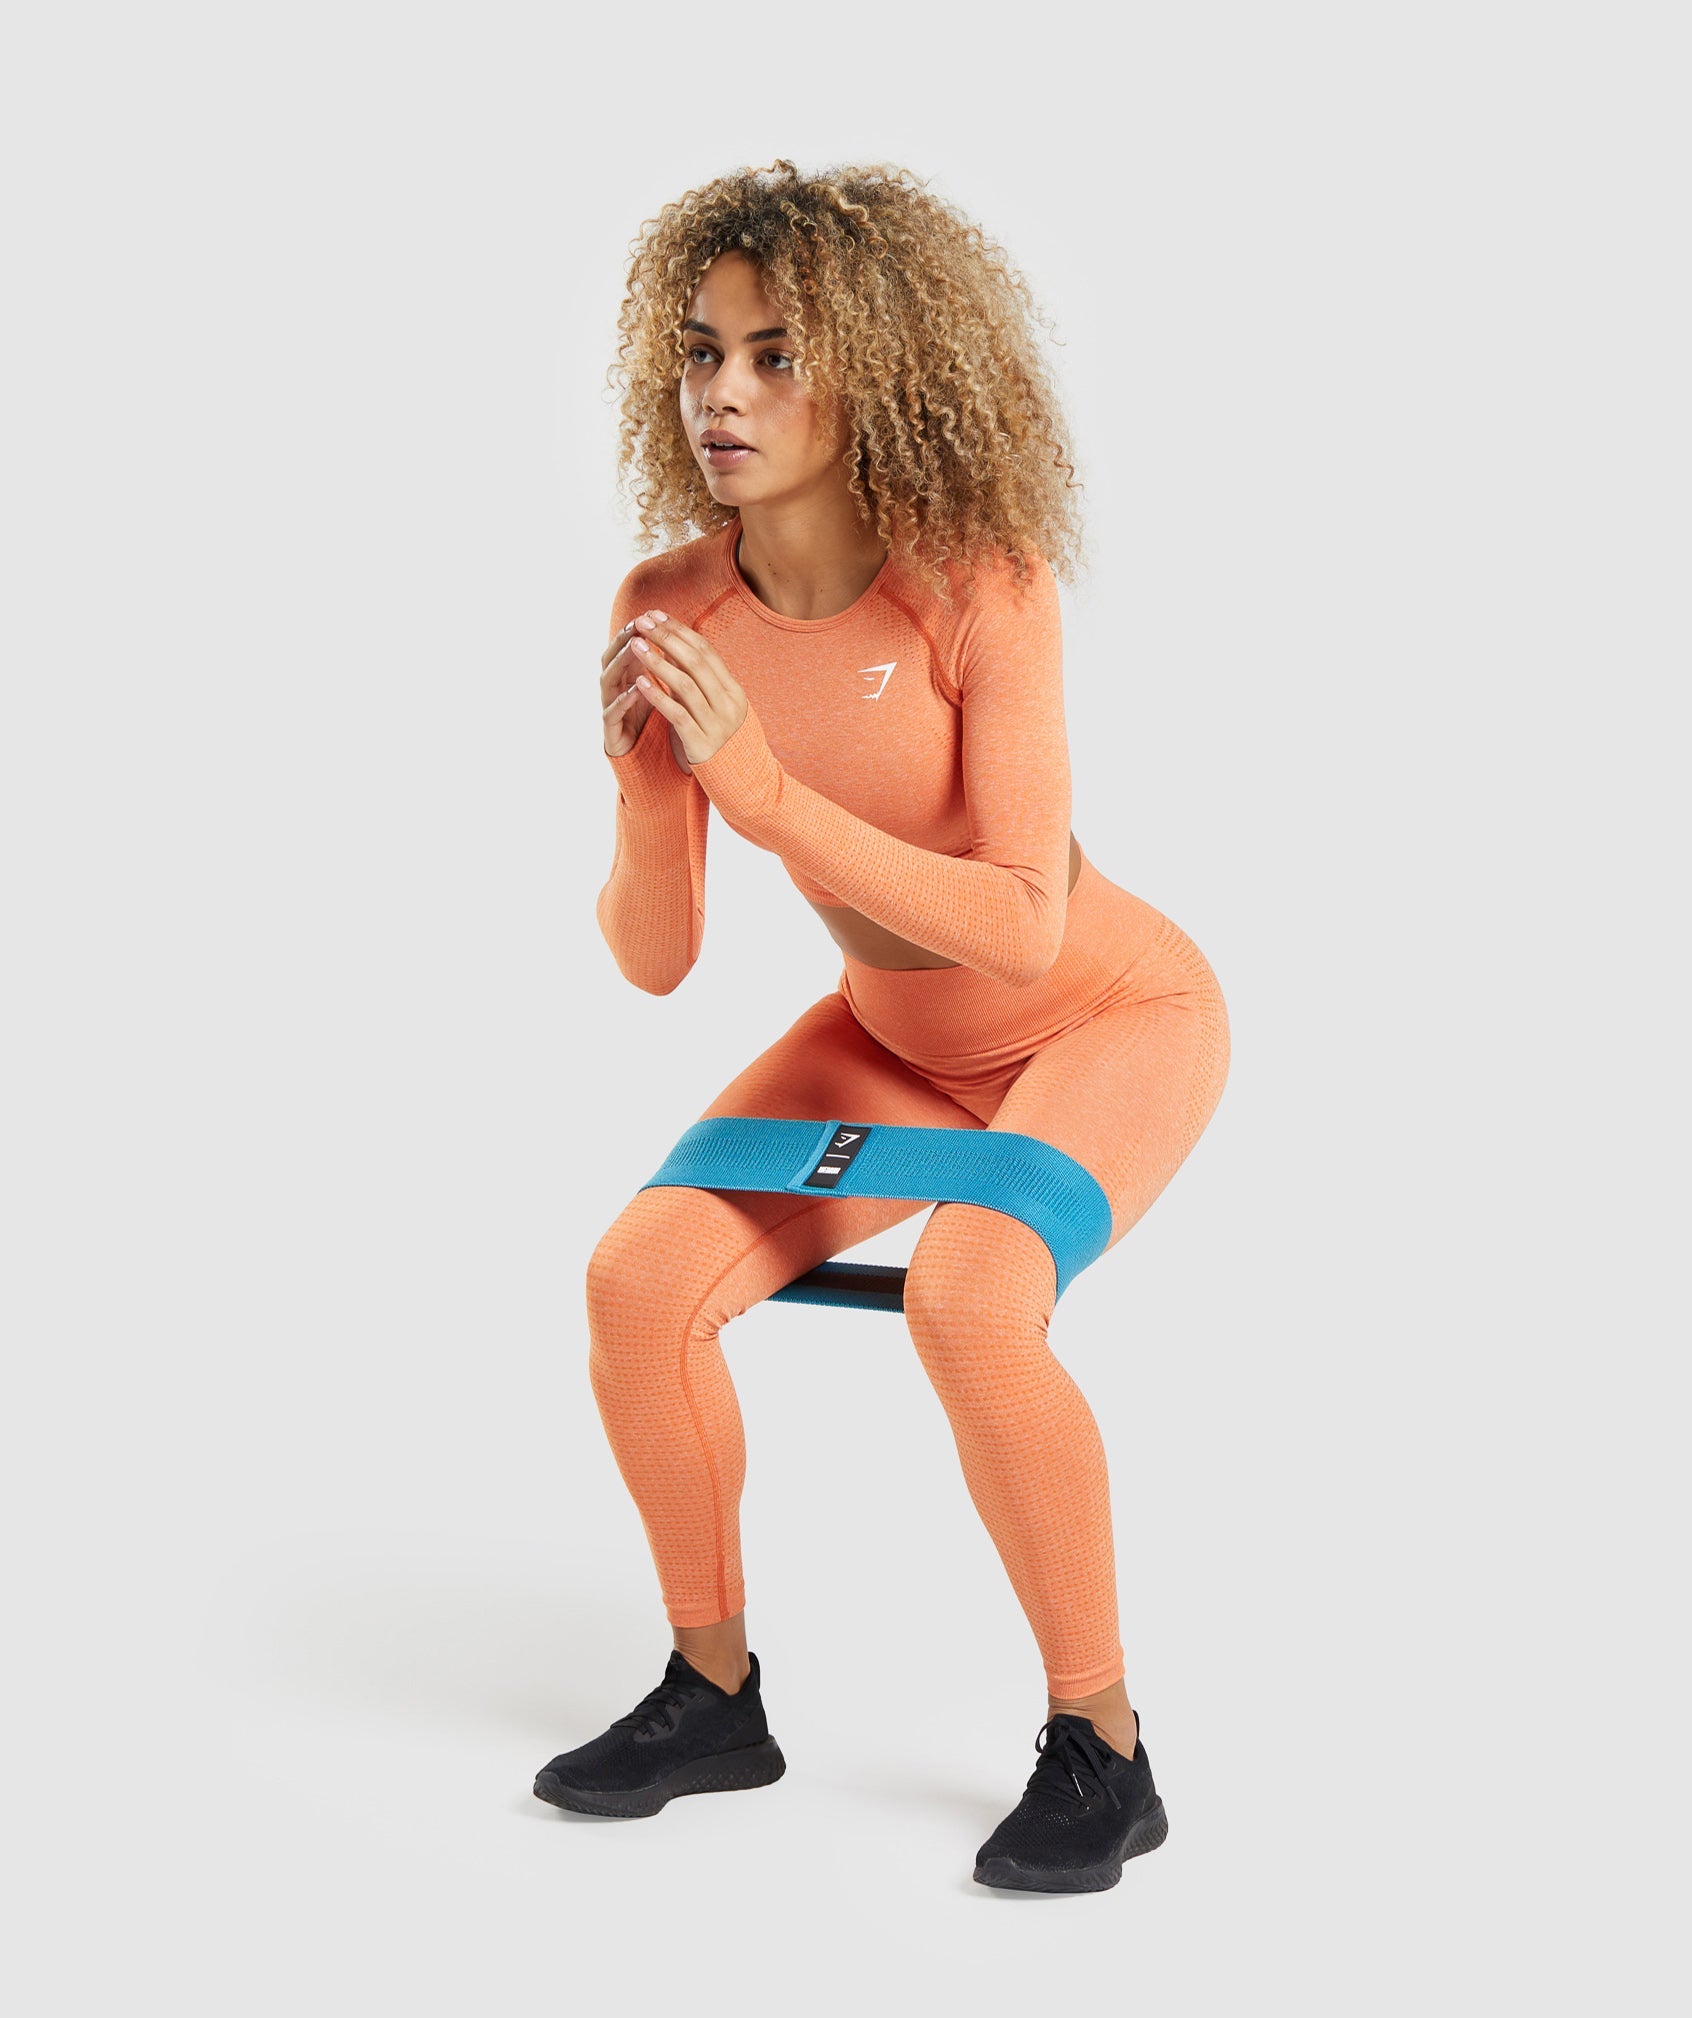 Gymshark orange stench leggings